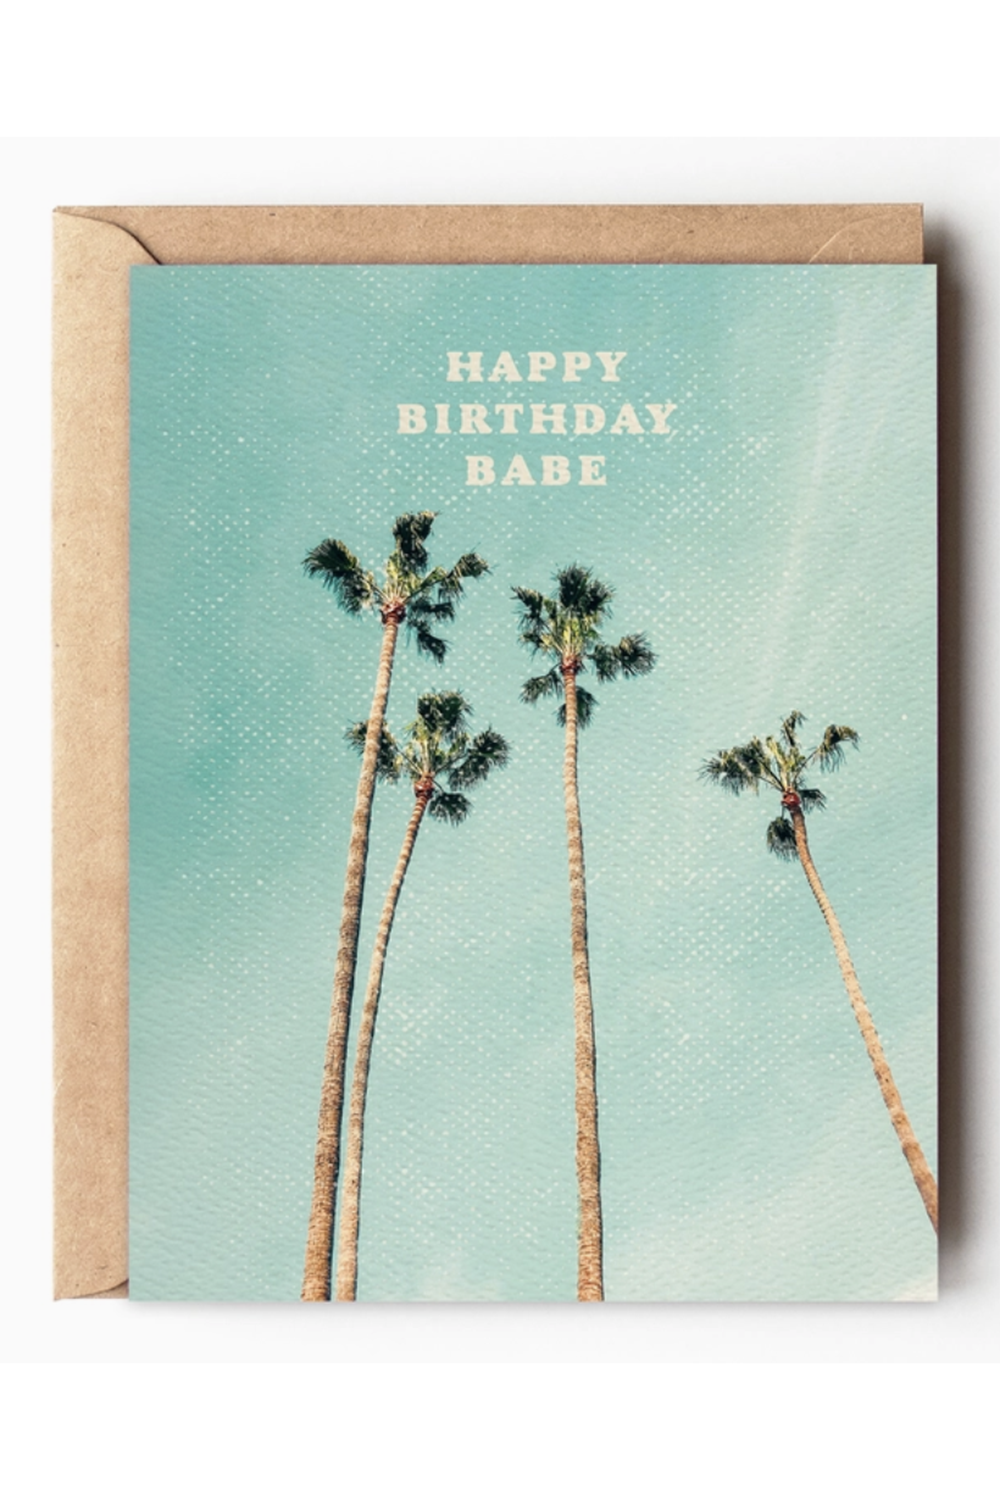 DD Birthday Card - Babe Palm Tree